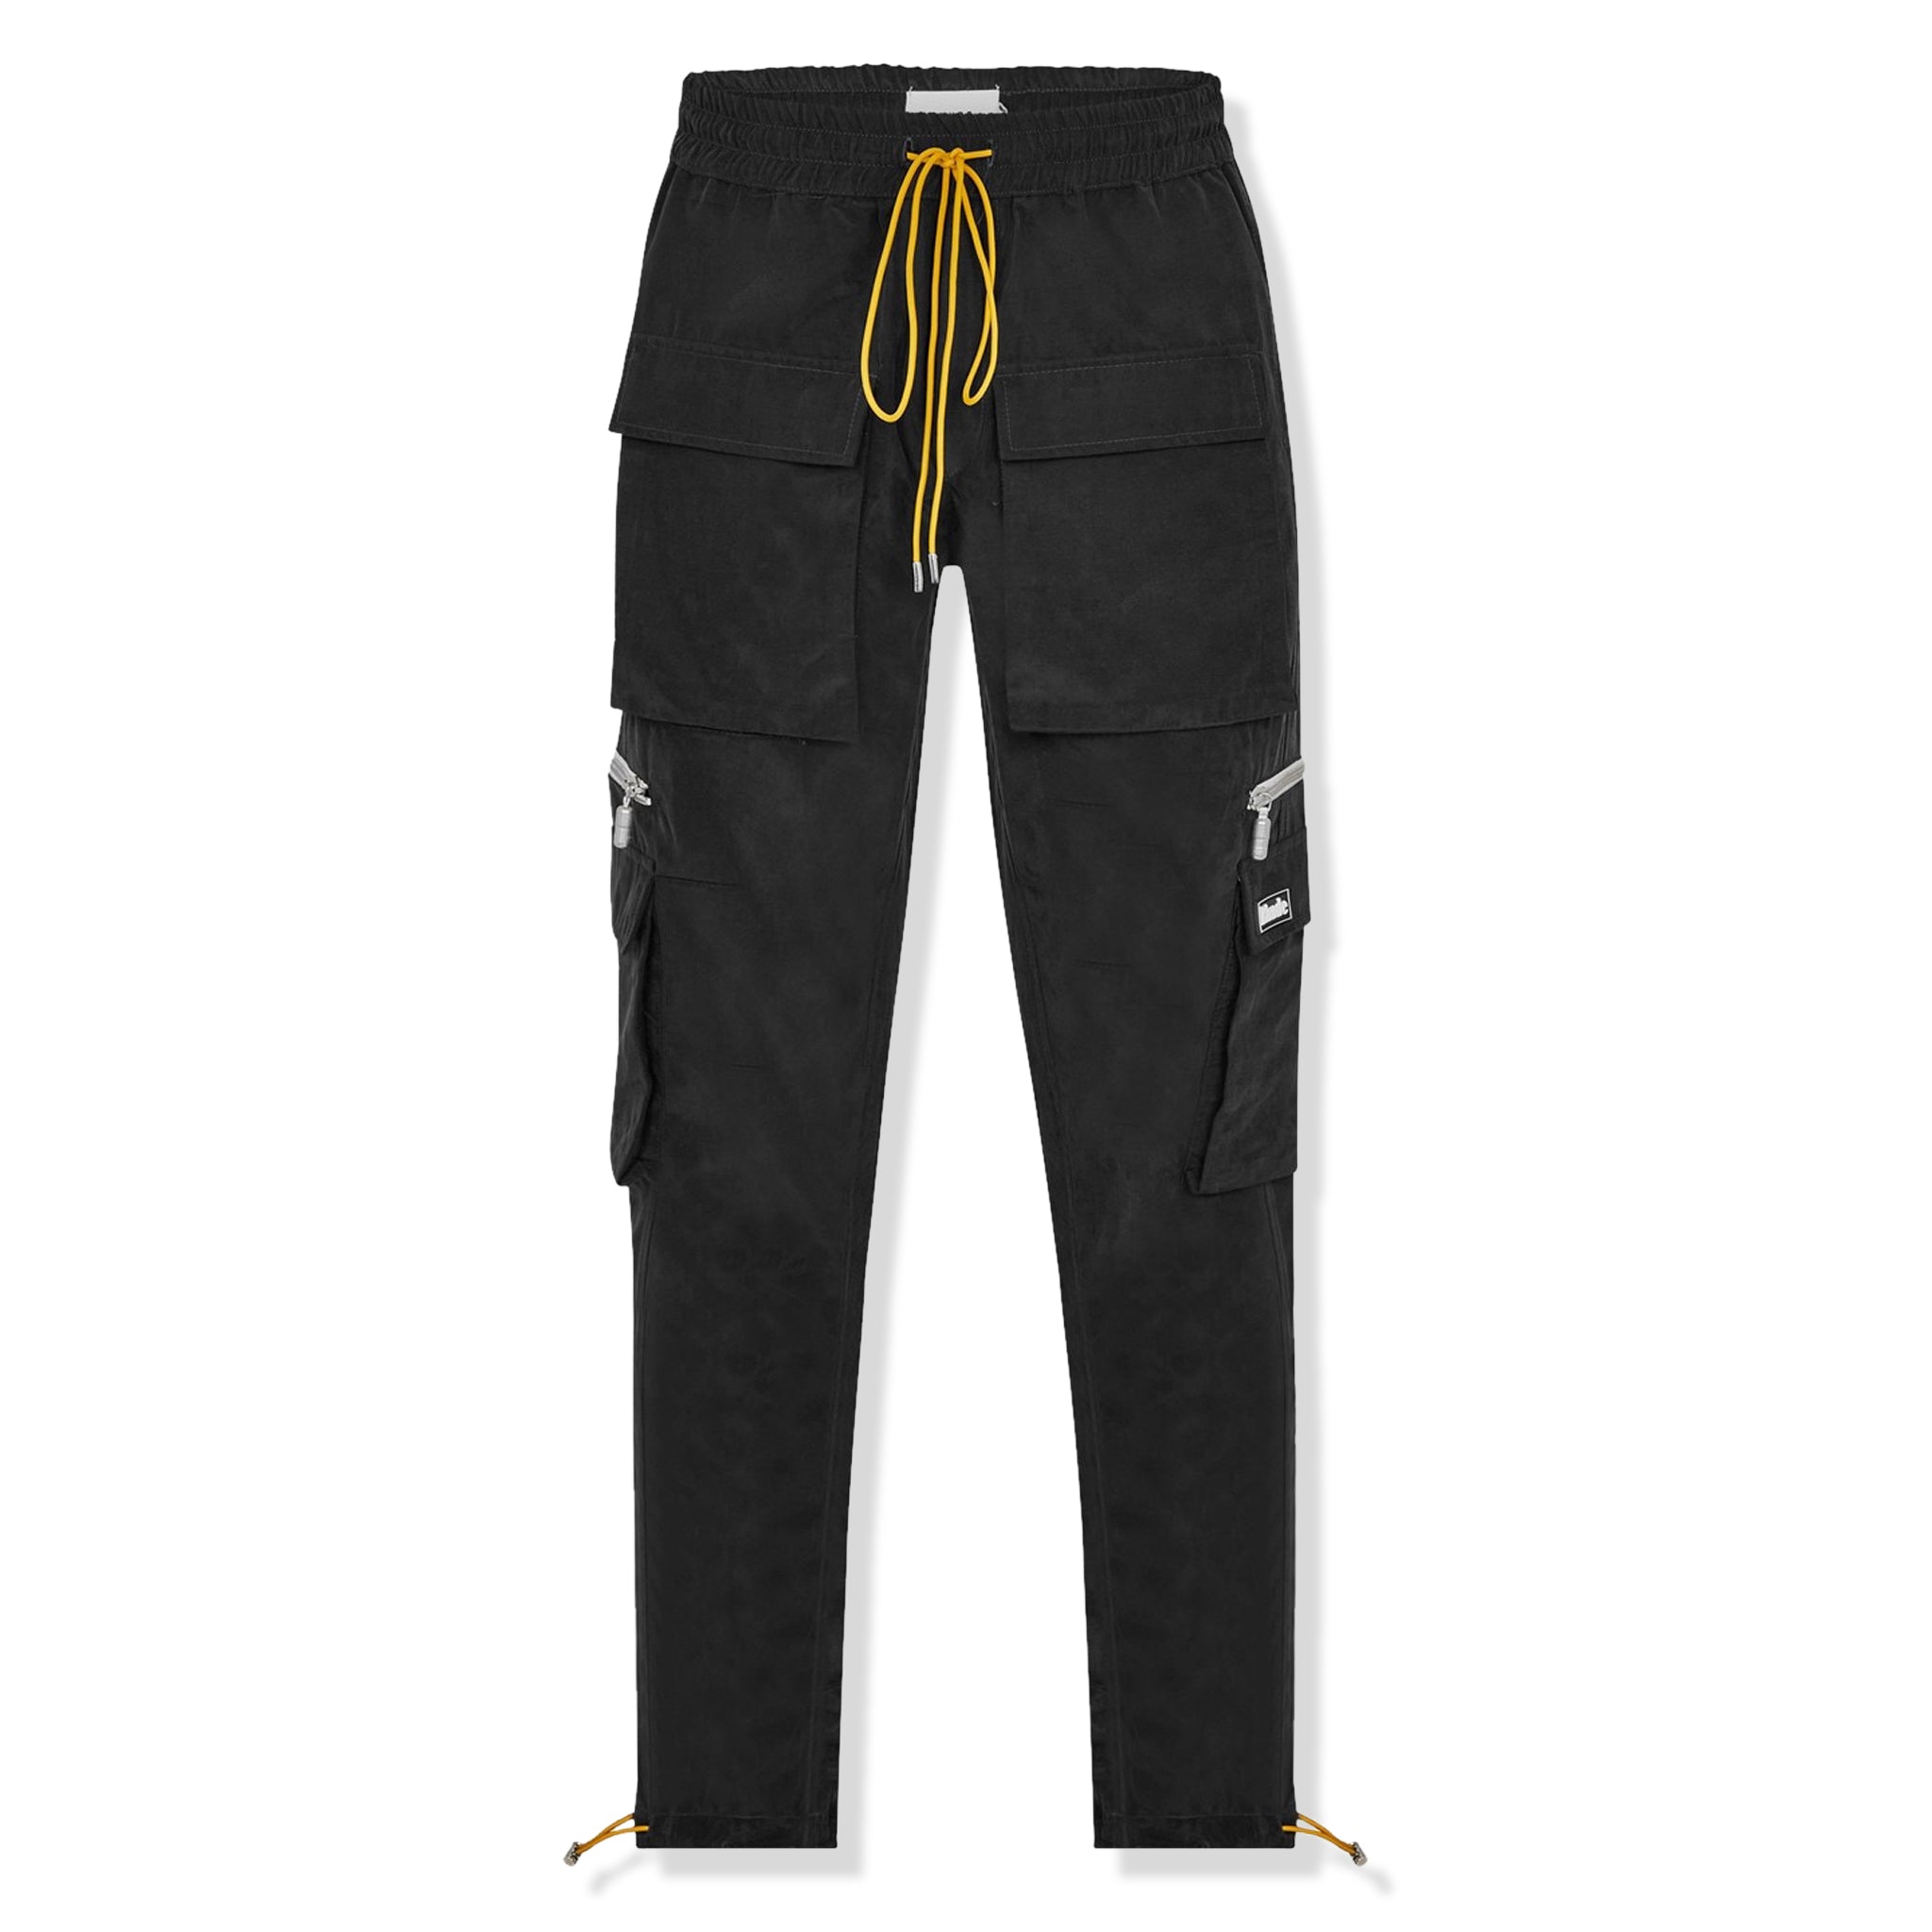 Buy Black Track Pants for Men by LEE BONEE Online | Ajio.com